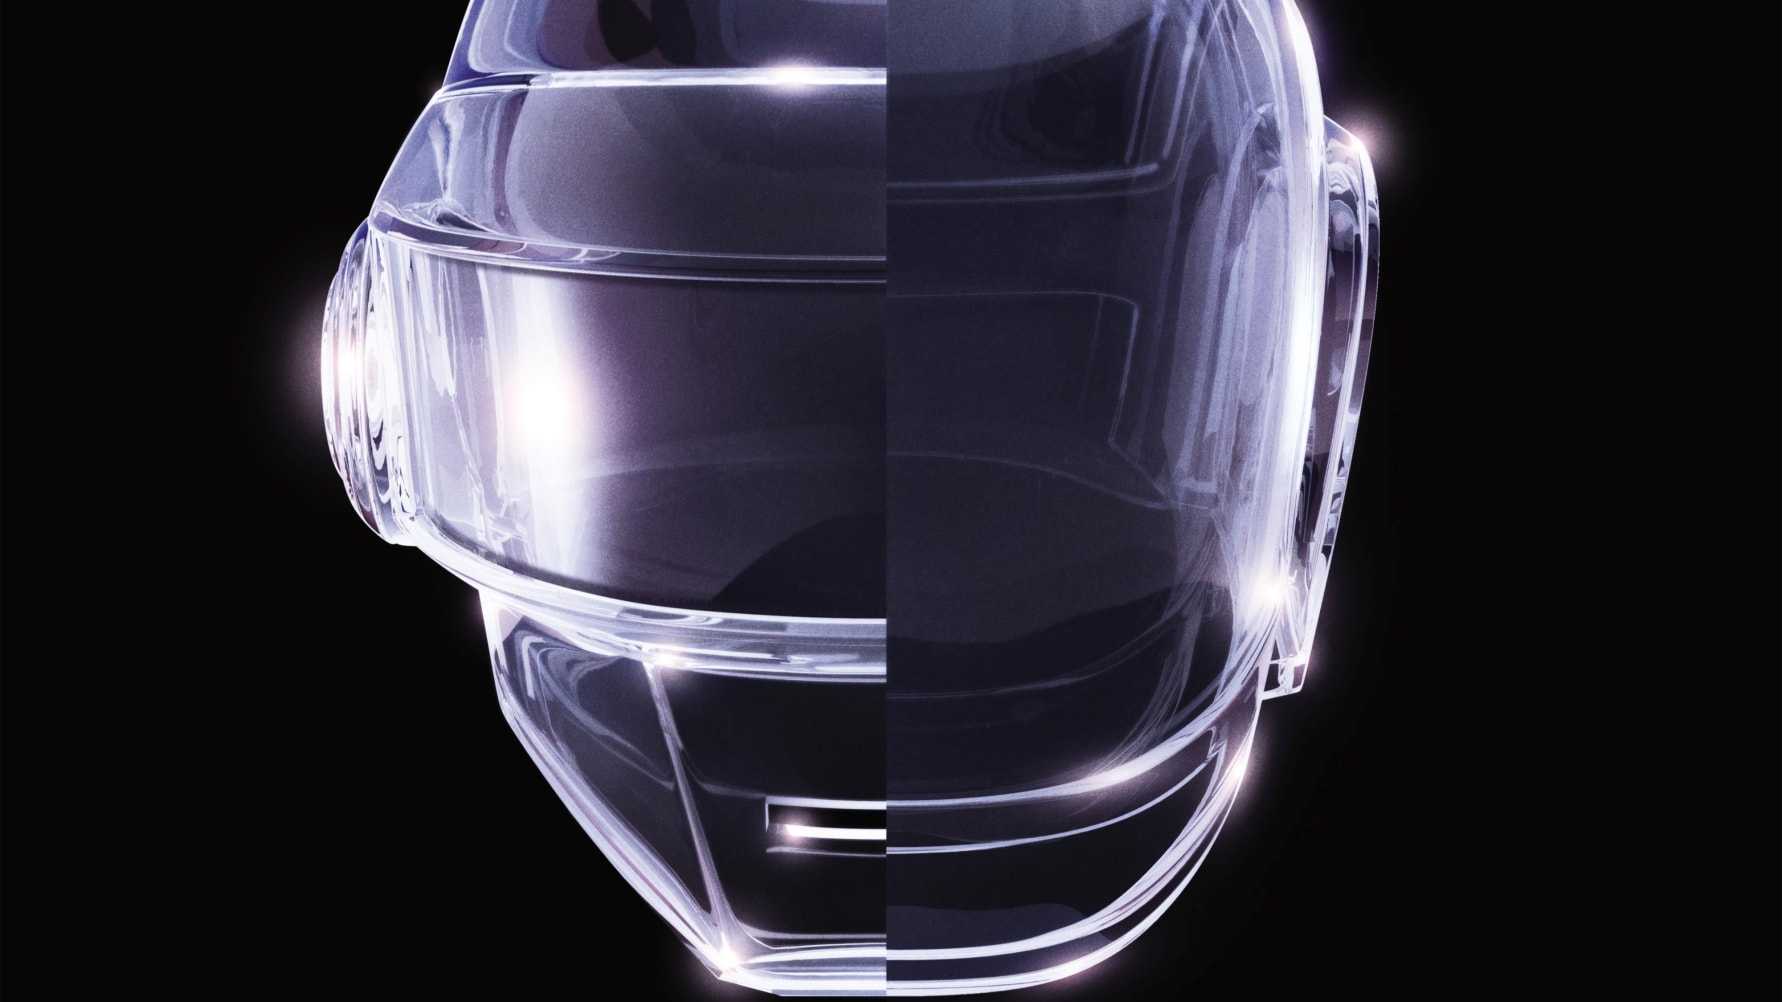 Daft Punk firar ”Random Access Memories” 10 år med jubileumsutgåva – släpps 12 maj